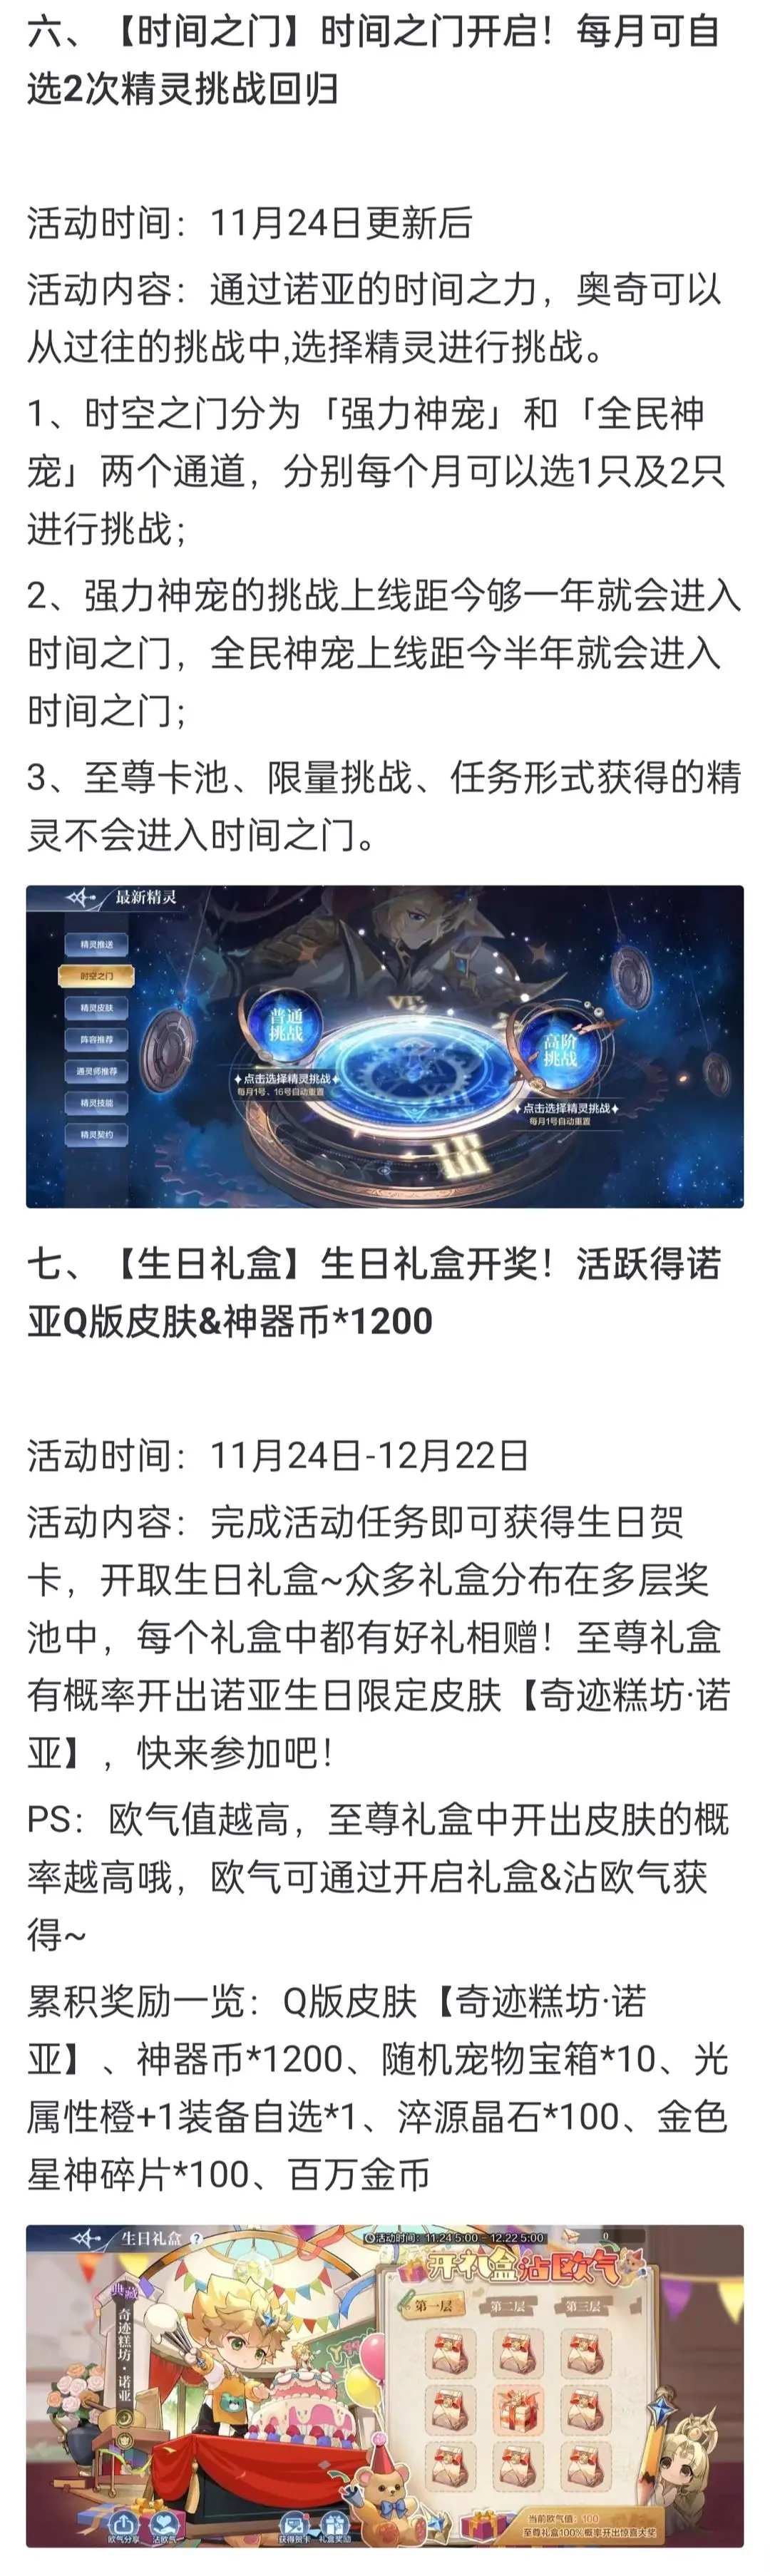 《奧奇傳說手遊》更新公告11月24日 小諾生日會開啟